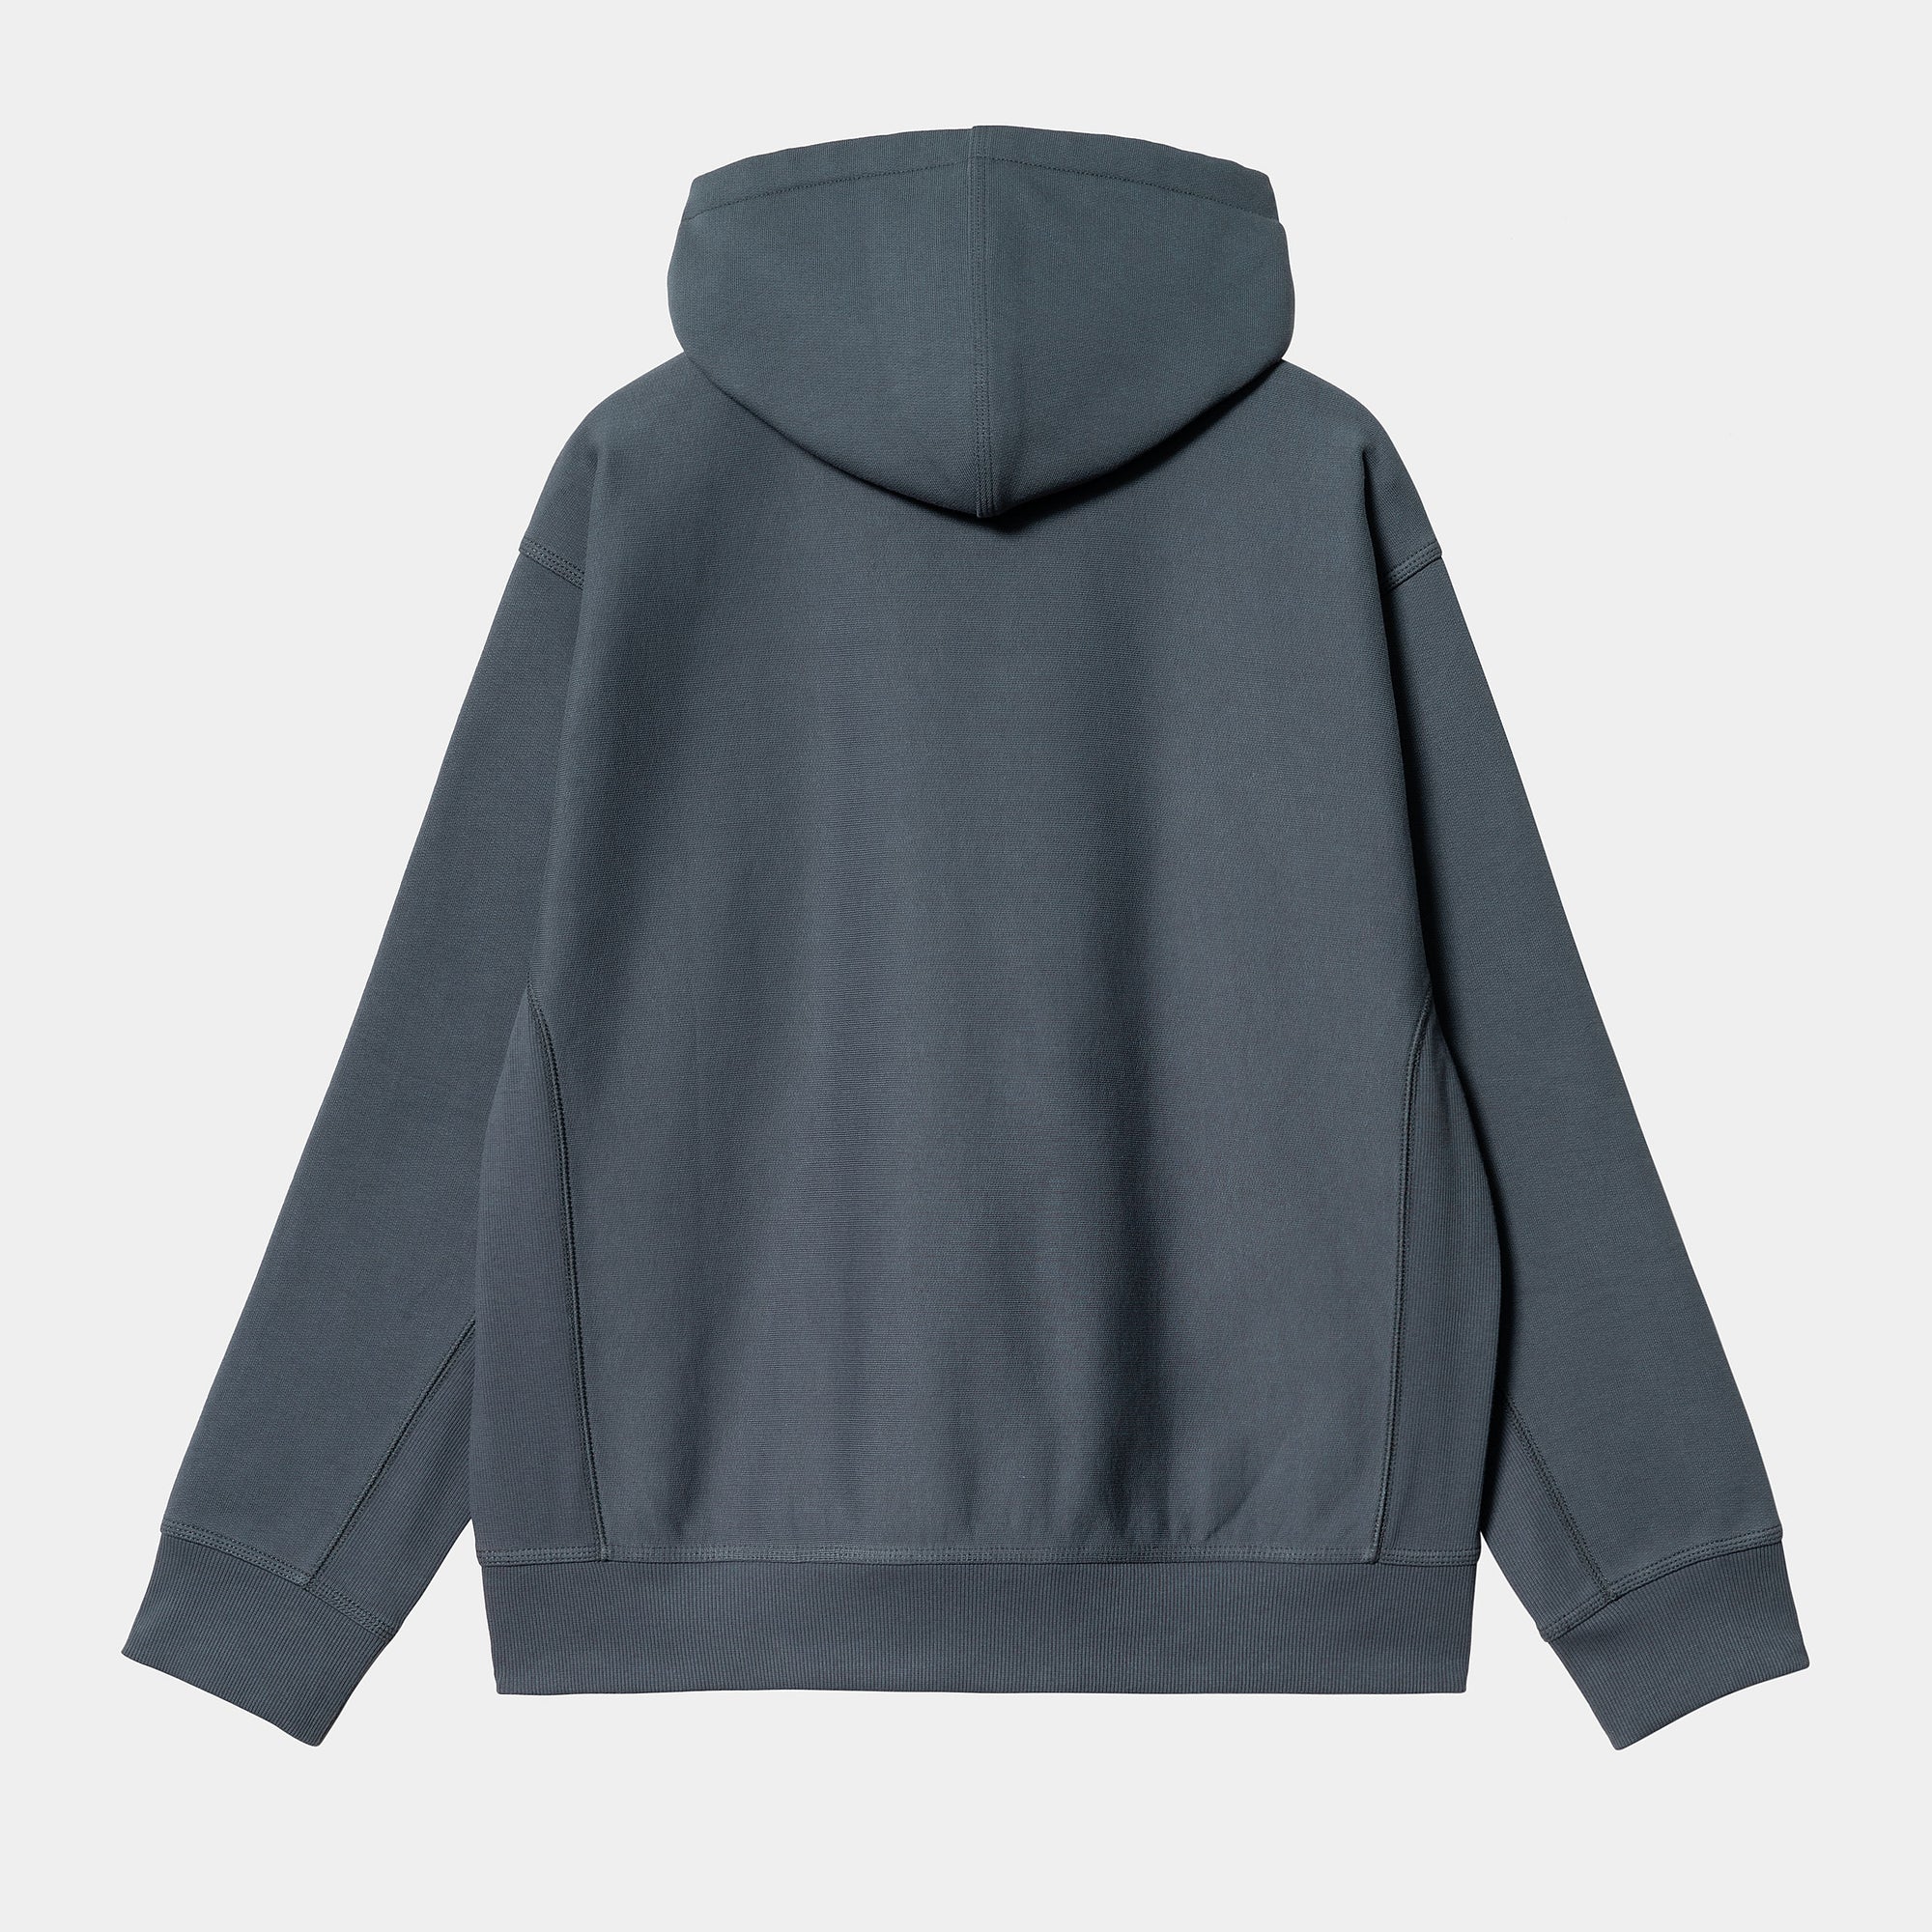 Carhartt WIP - American Script Pullover Hooded Sweatshirt - Zeus